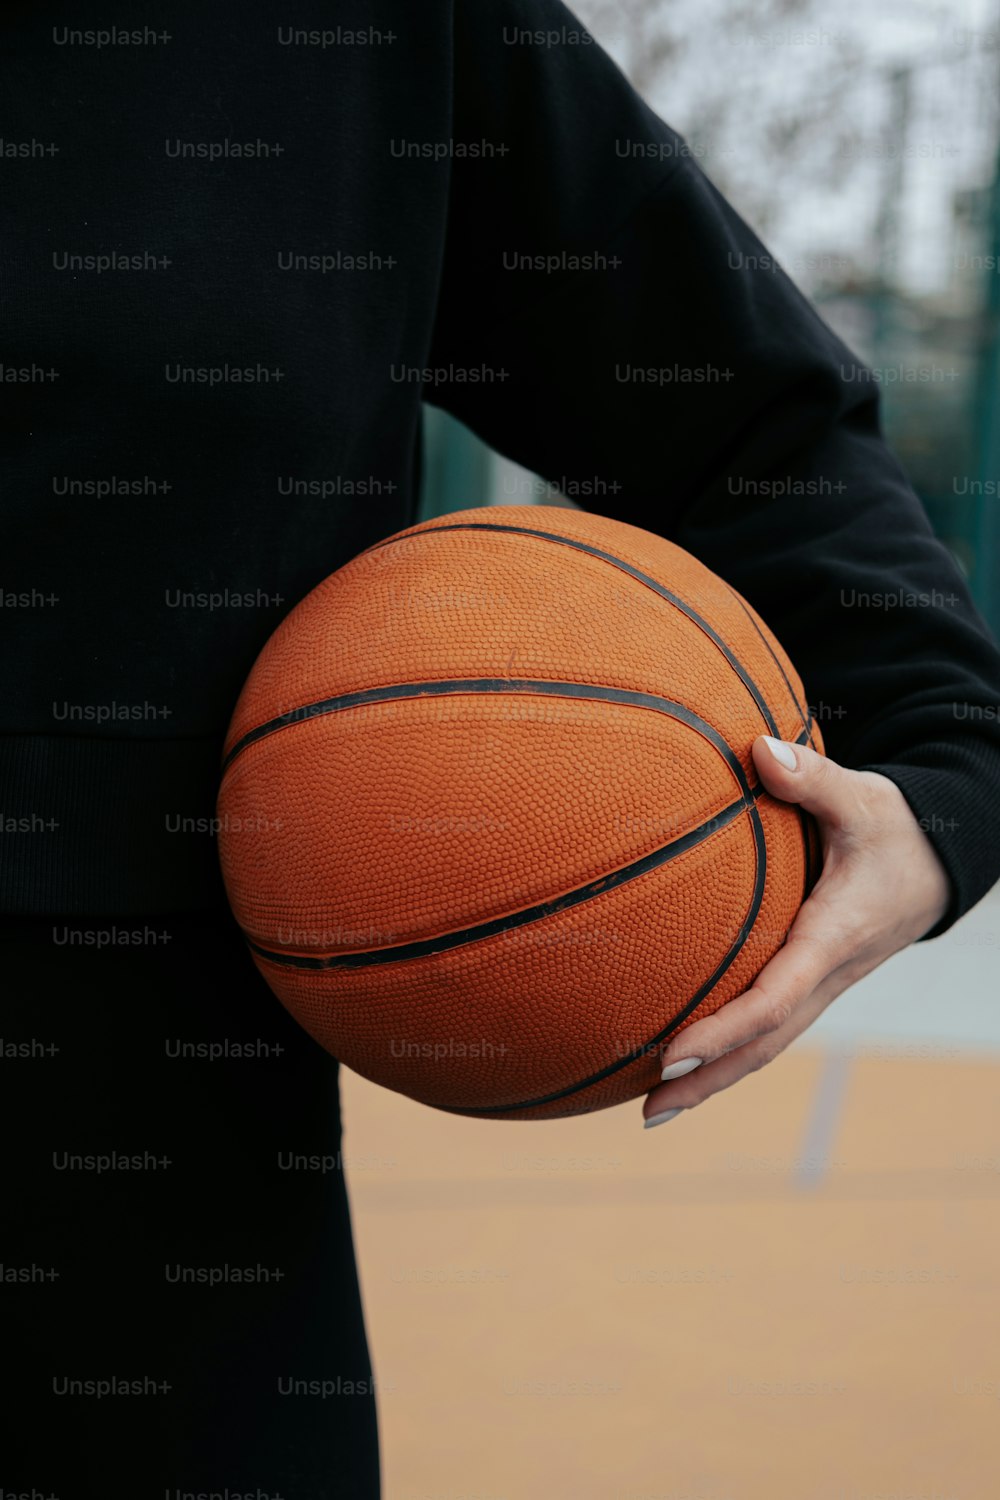 eine Person, die einen Basketball in der Hand hält